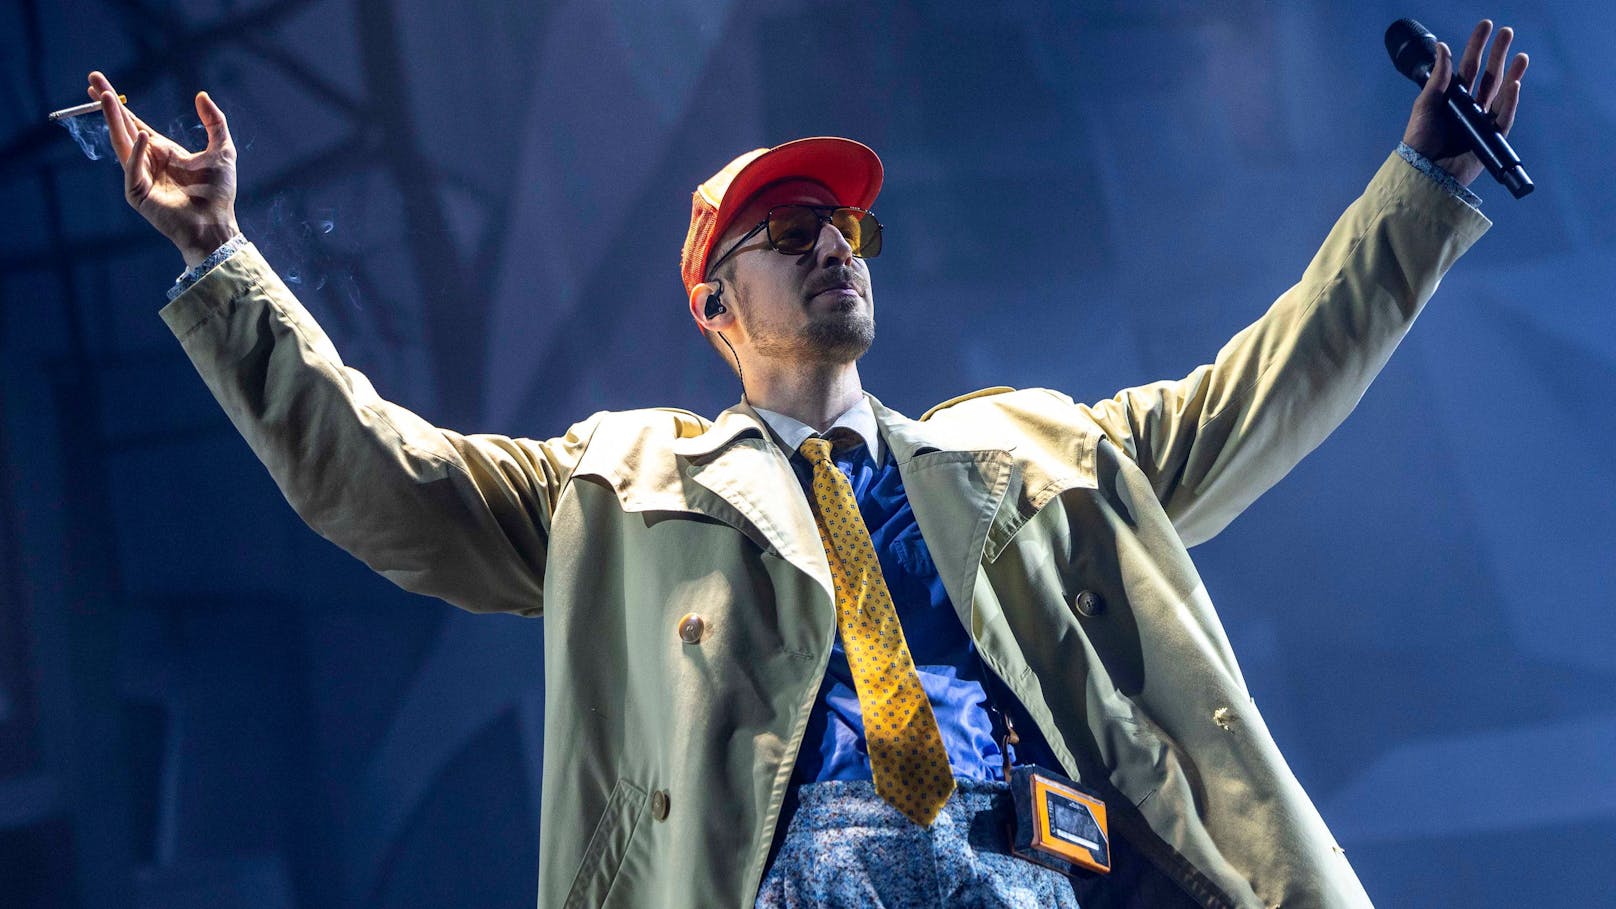 Tränen: Kult-Rapper beendet während Show seine Karriere